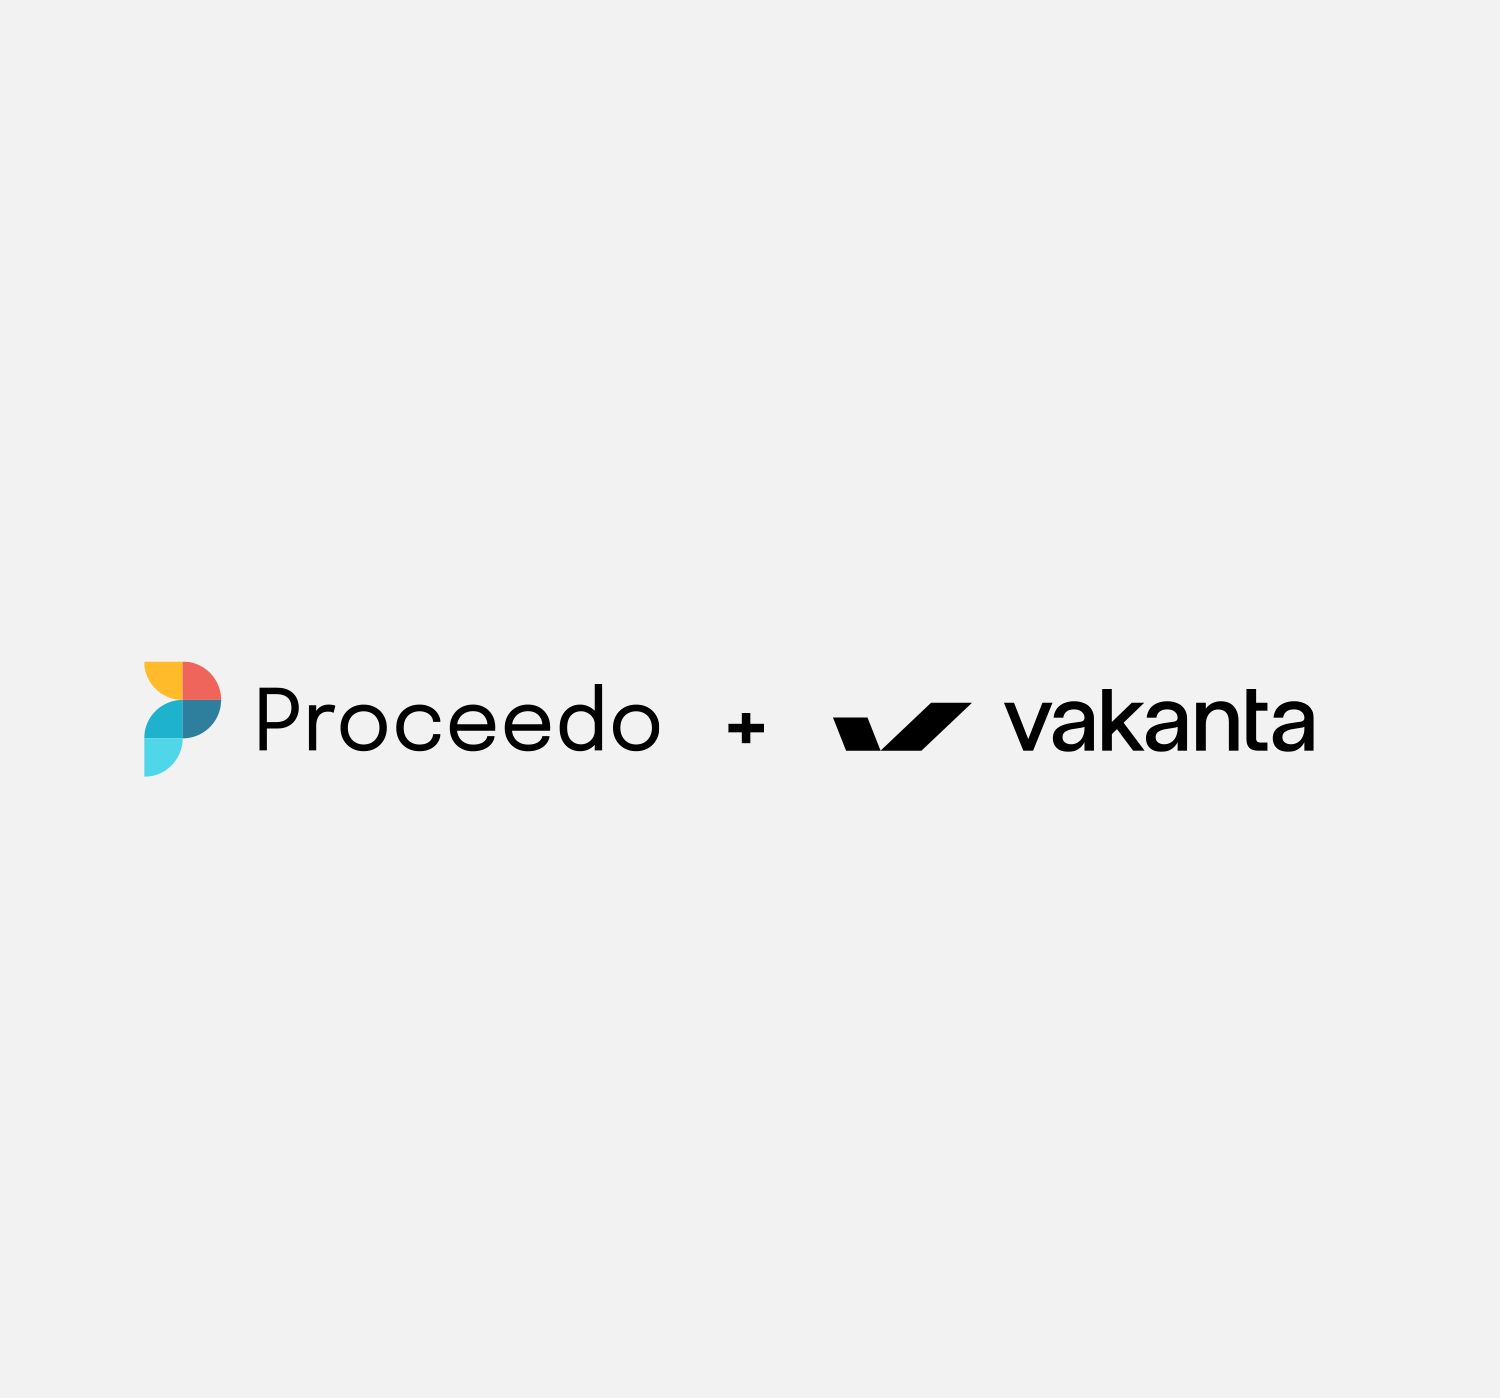 proceedo_vakanta_gray-bg